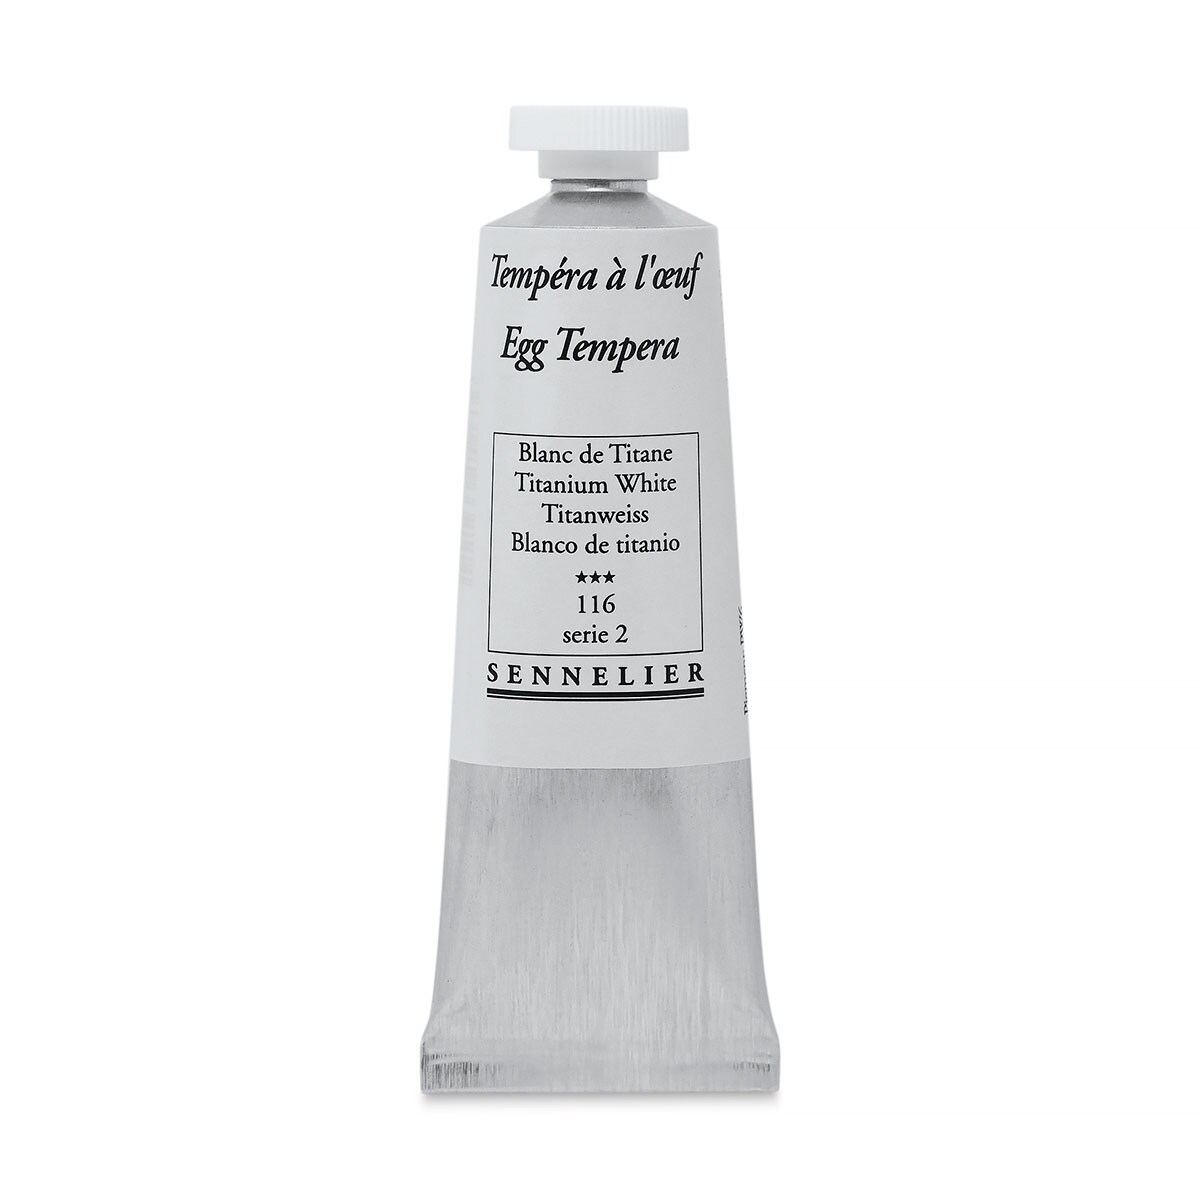 Sennelier Artists Egg Tempera - Titanium White, 34 ml tube